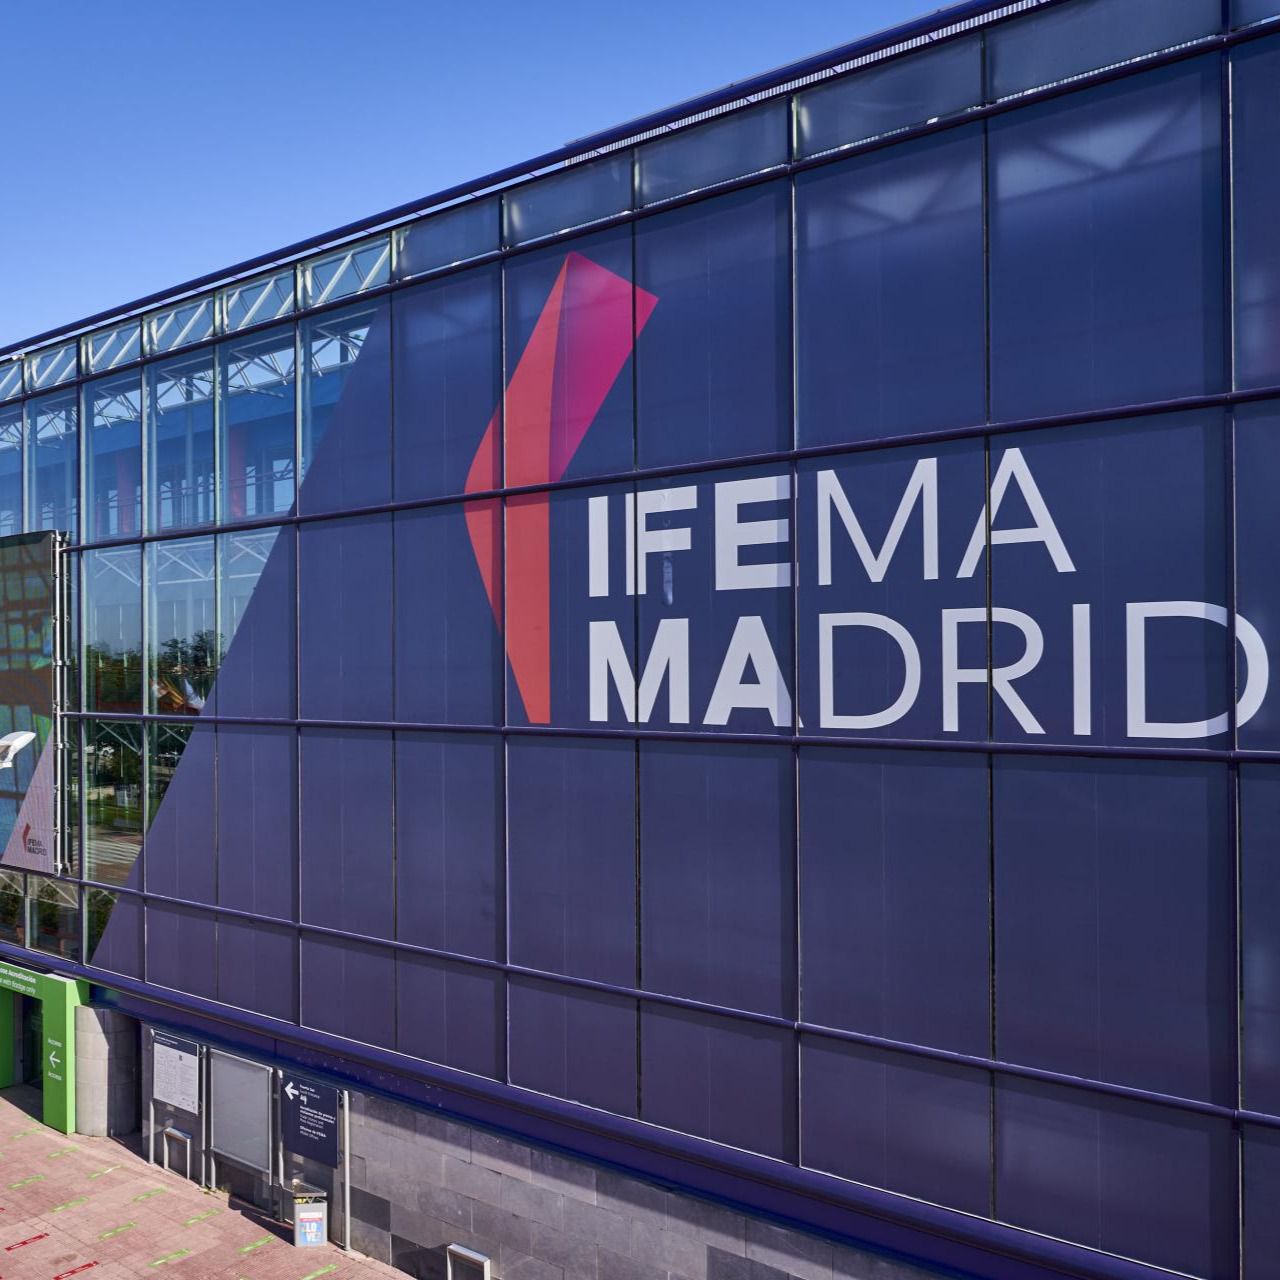 IFEMA Madri-economia circular (foto Madridiario)